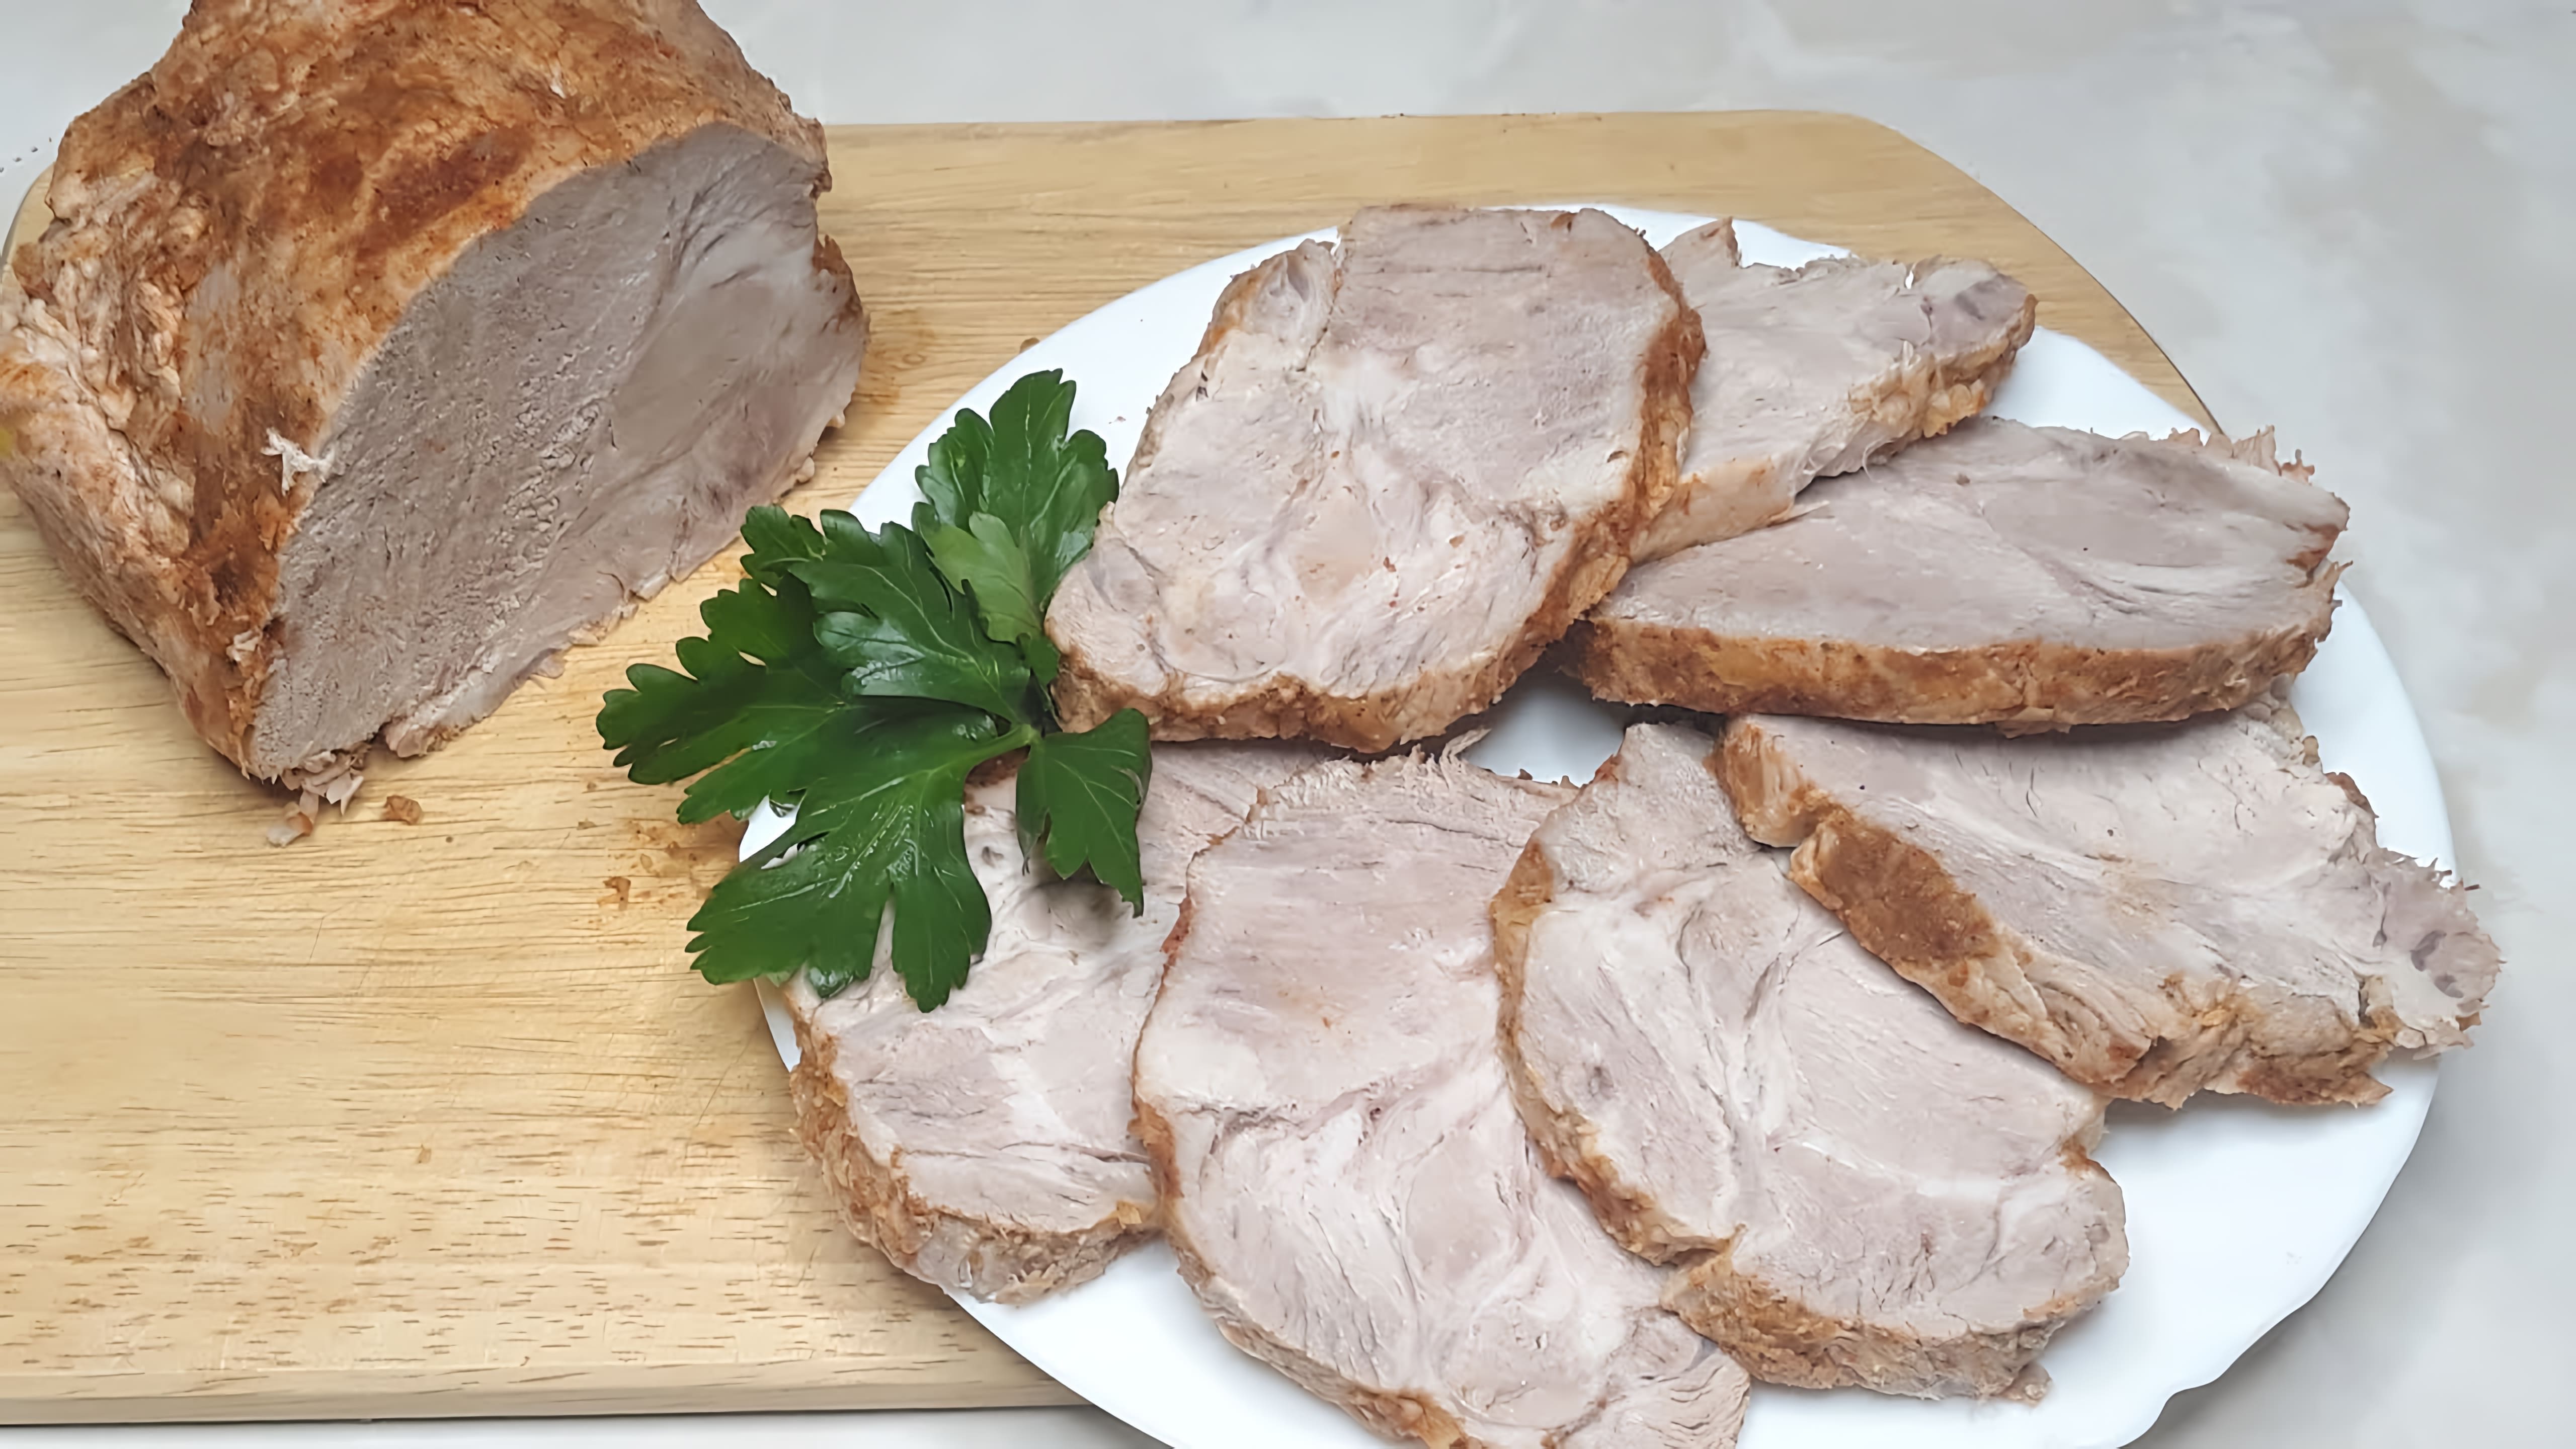 В этом видео демонстрируется рецепт приготовления сочной буженины из свинины, вареной в кастрюле со специями